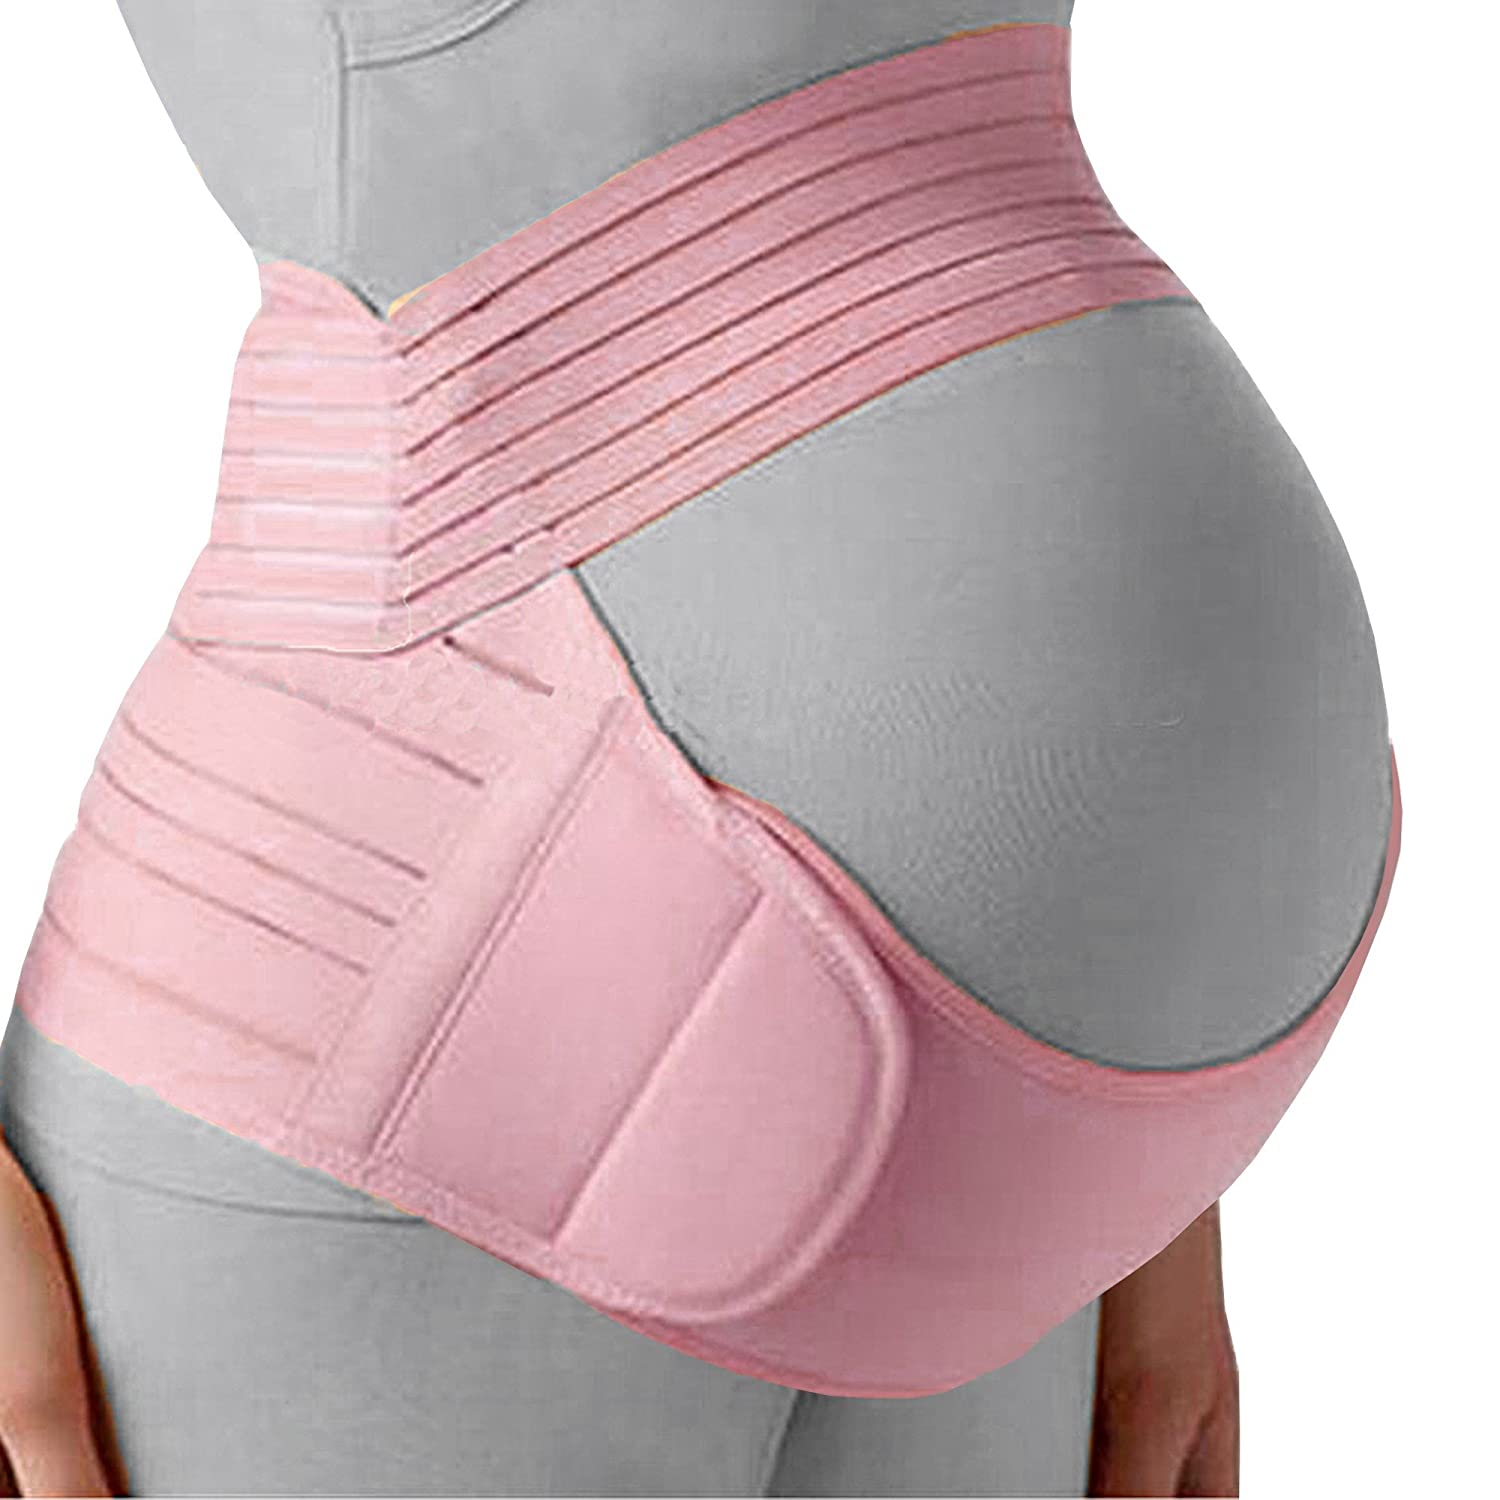 Belly Band for Pregnancy, Pregnancy Belt - Maternity Belt for Back Pain. Prenatal 